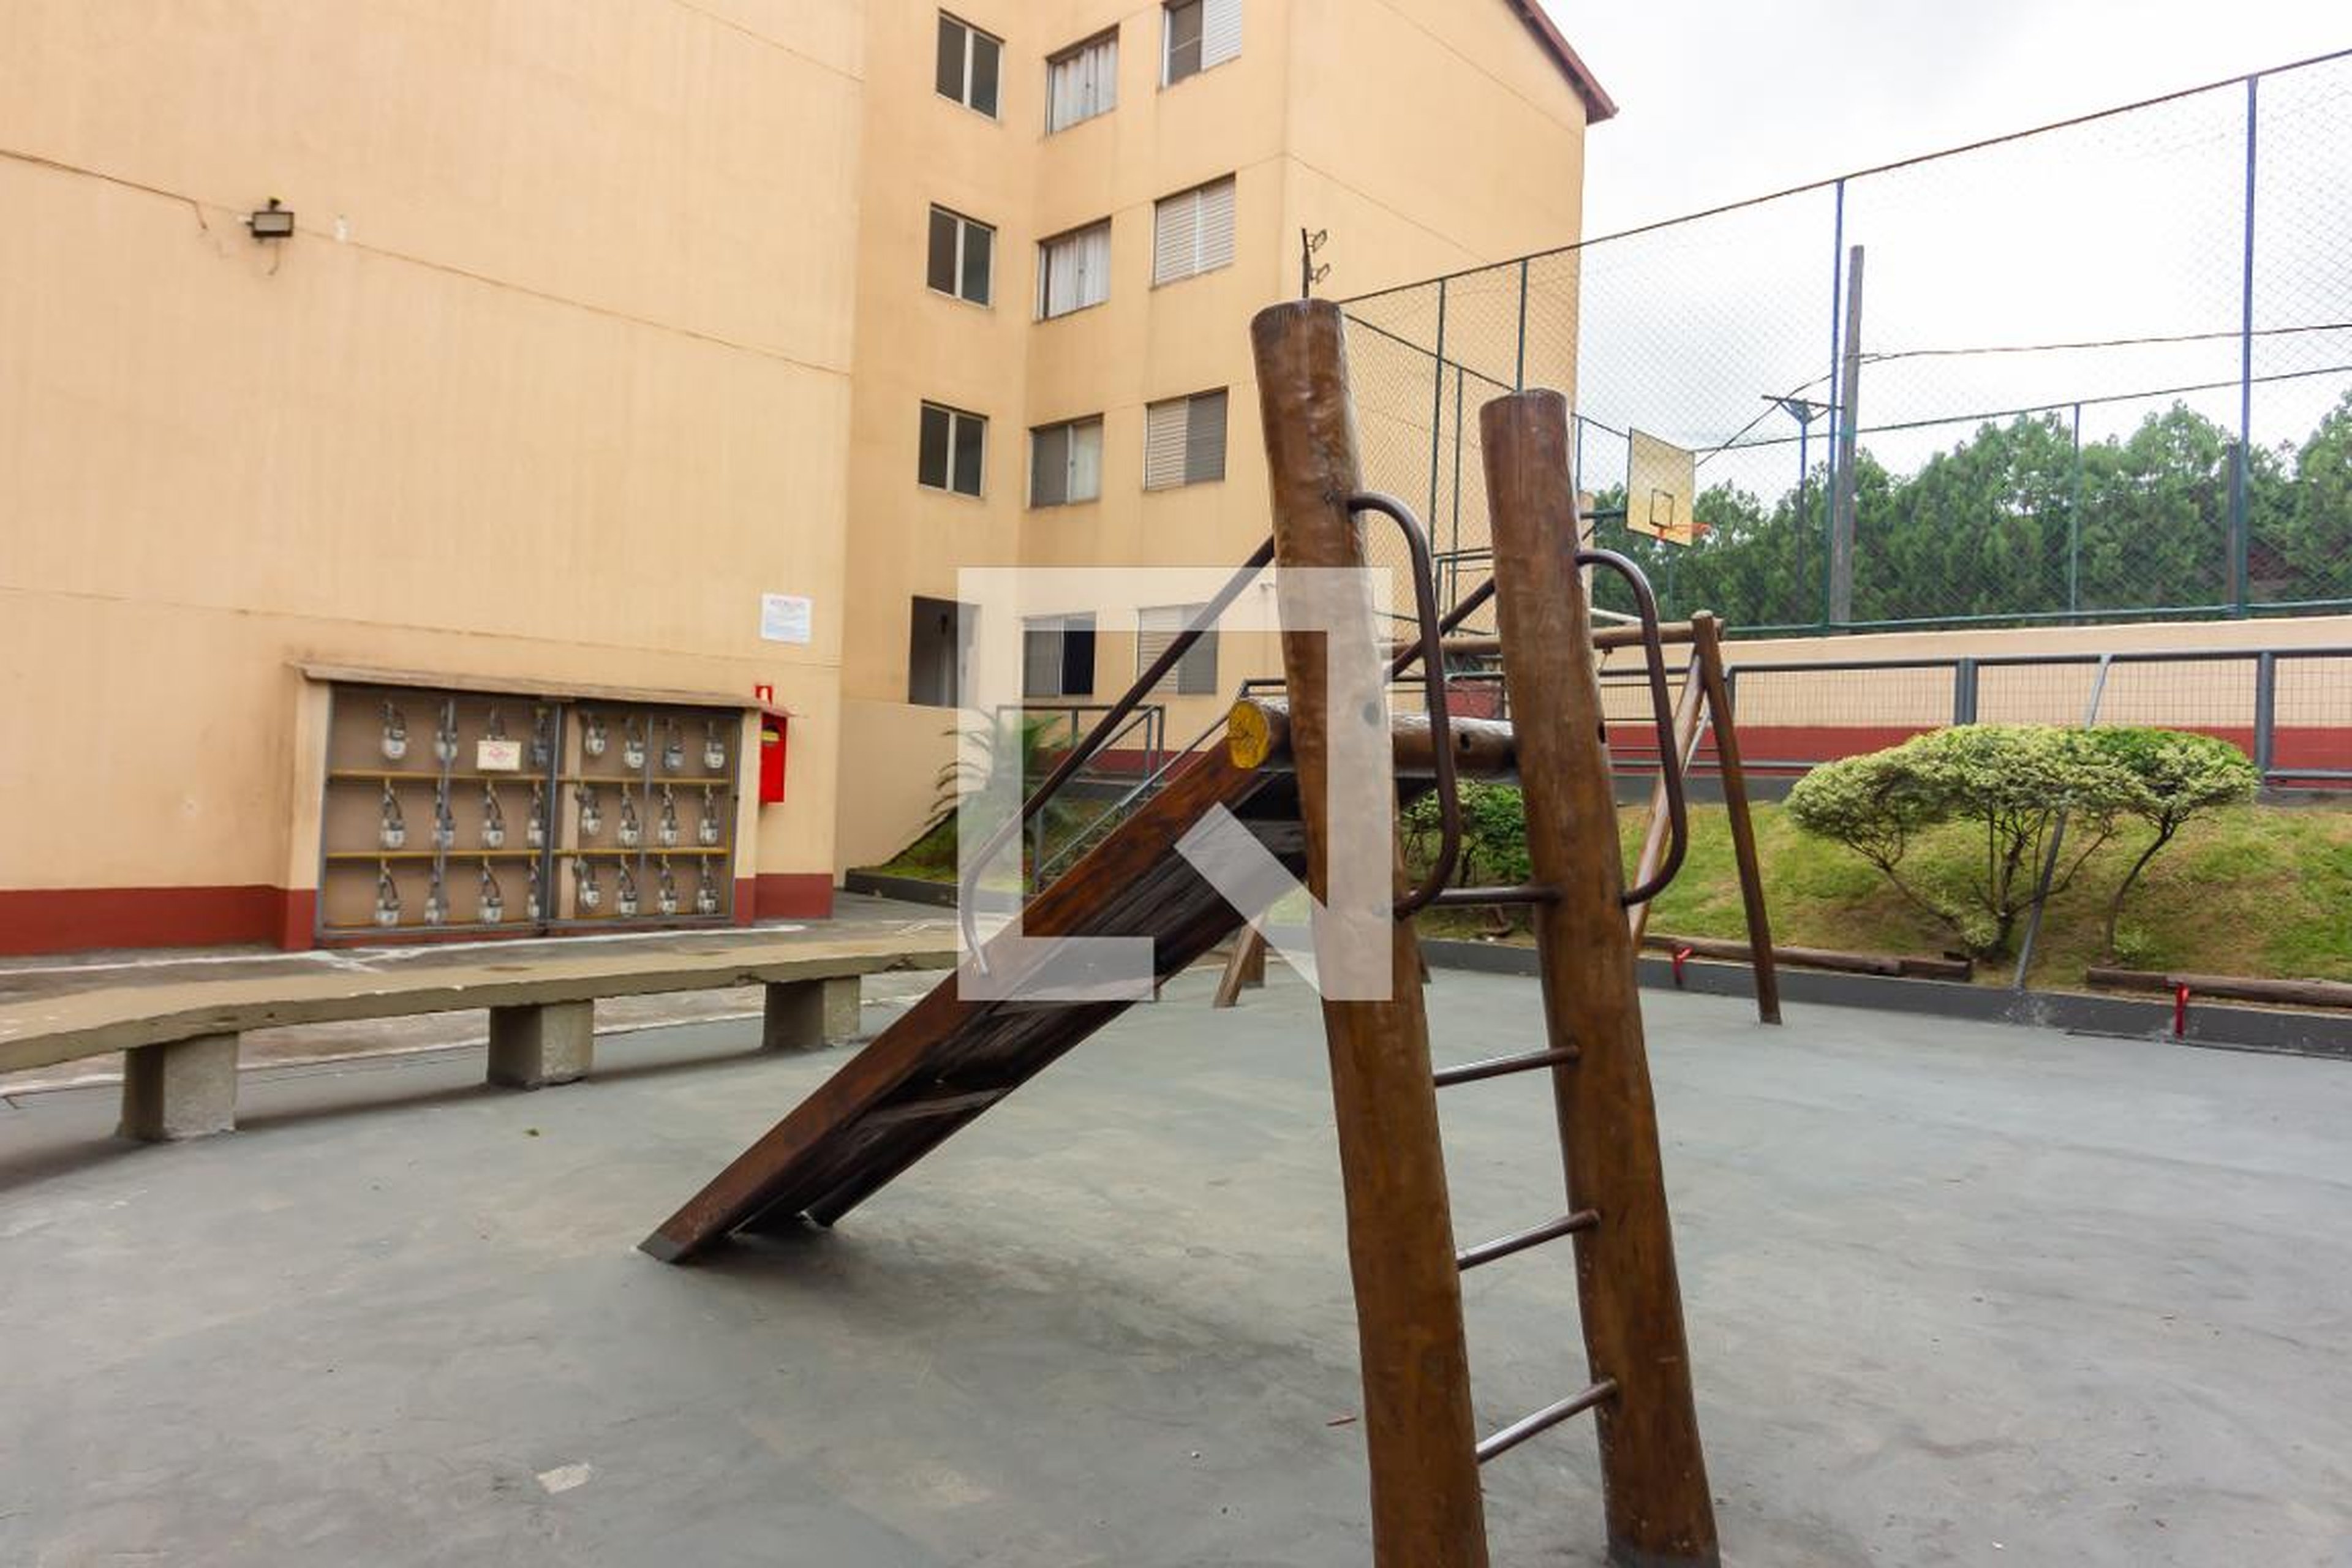 Playground - Vitória Régia